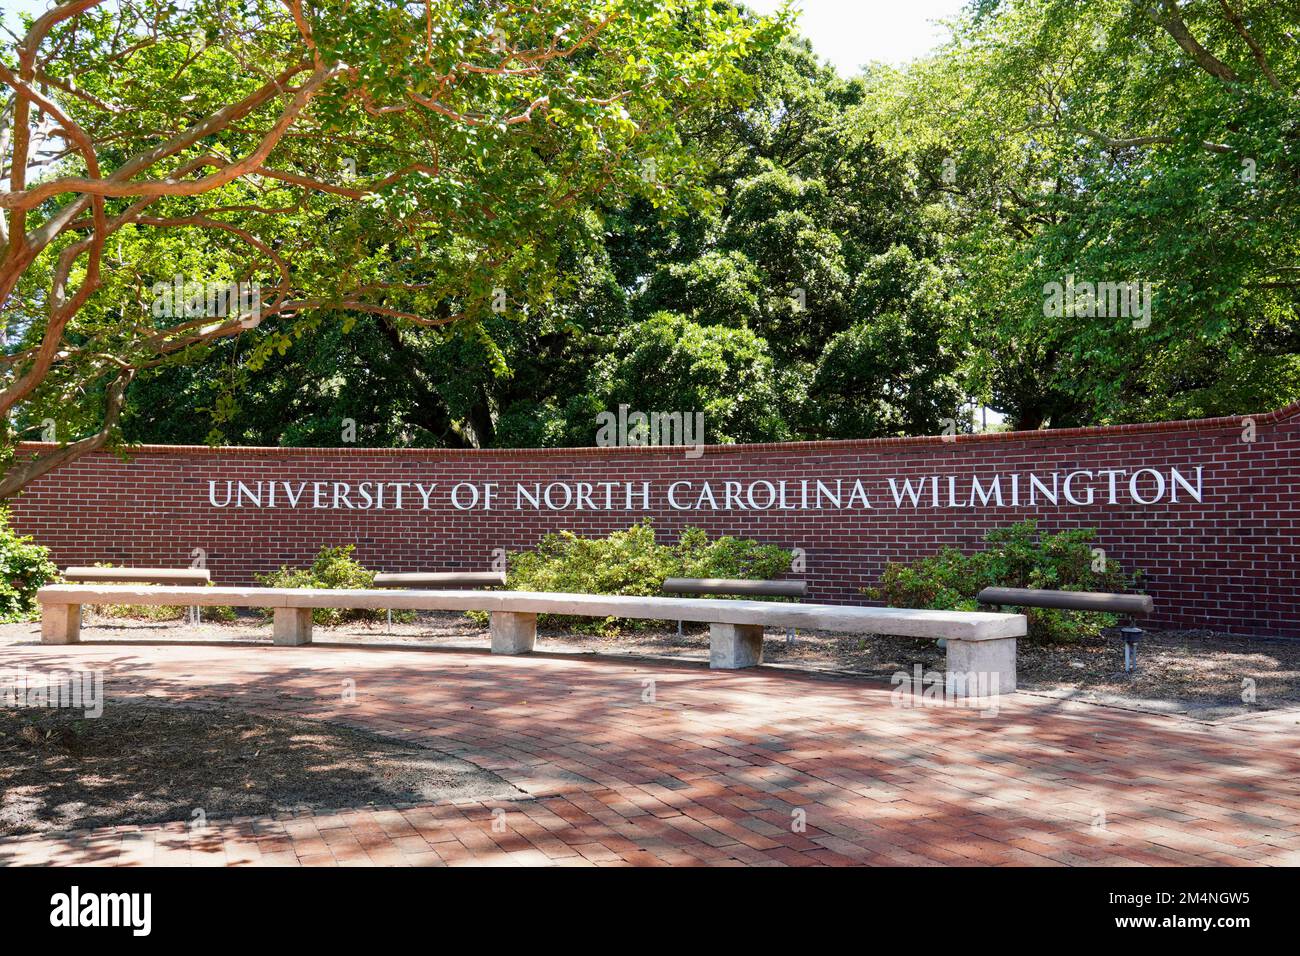 All'ingresso del campus, prendi l'indicazione per la University of North Carolina a Wilmington. Foto Stock